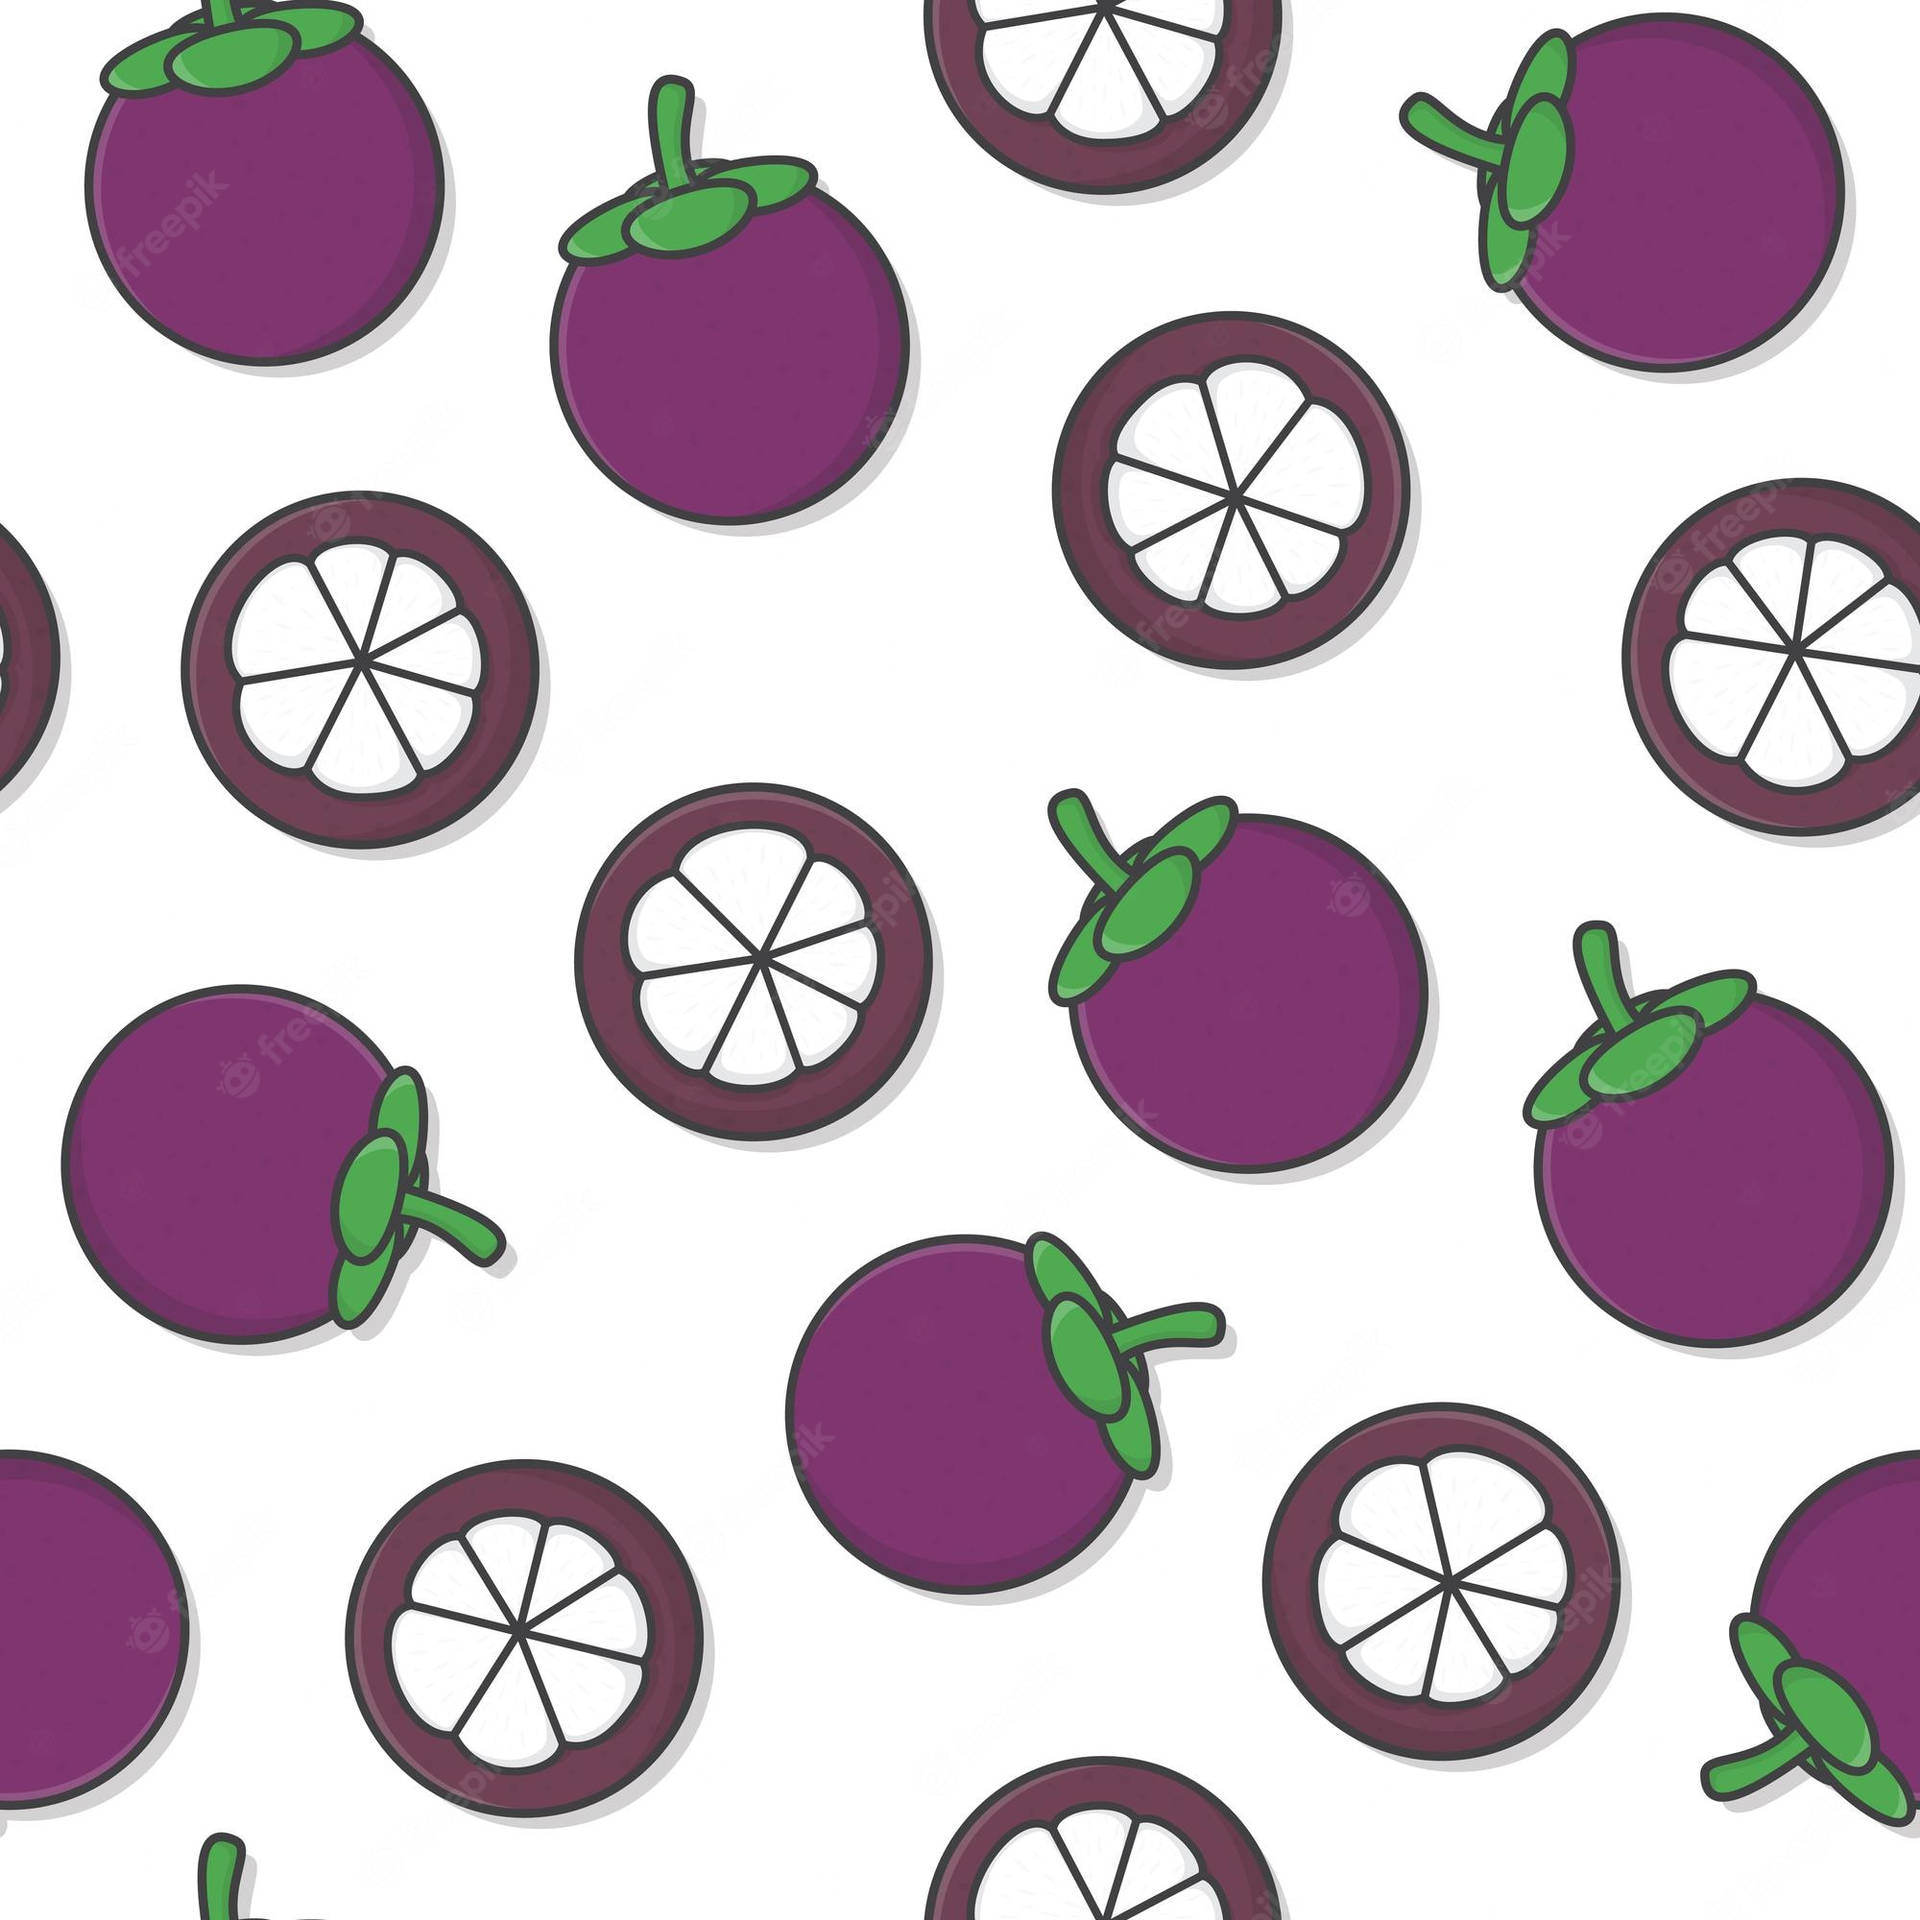 Collagepremium De Hermosas Mangostas Adorables Para Fondos De Pantalla De Computadora O Móvil. Fondo de pantalla